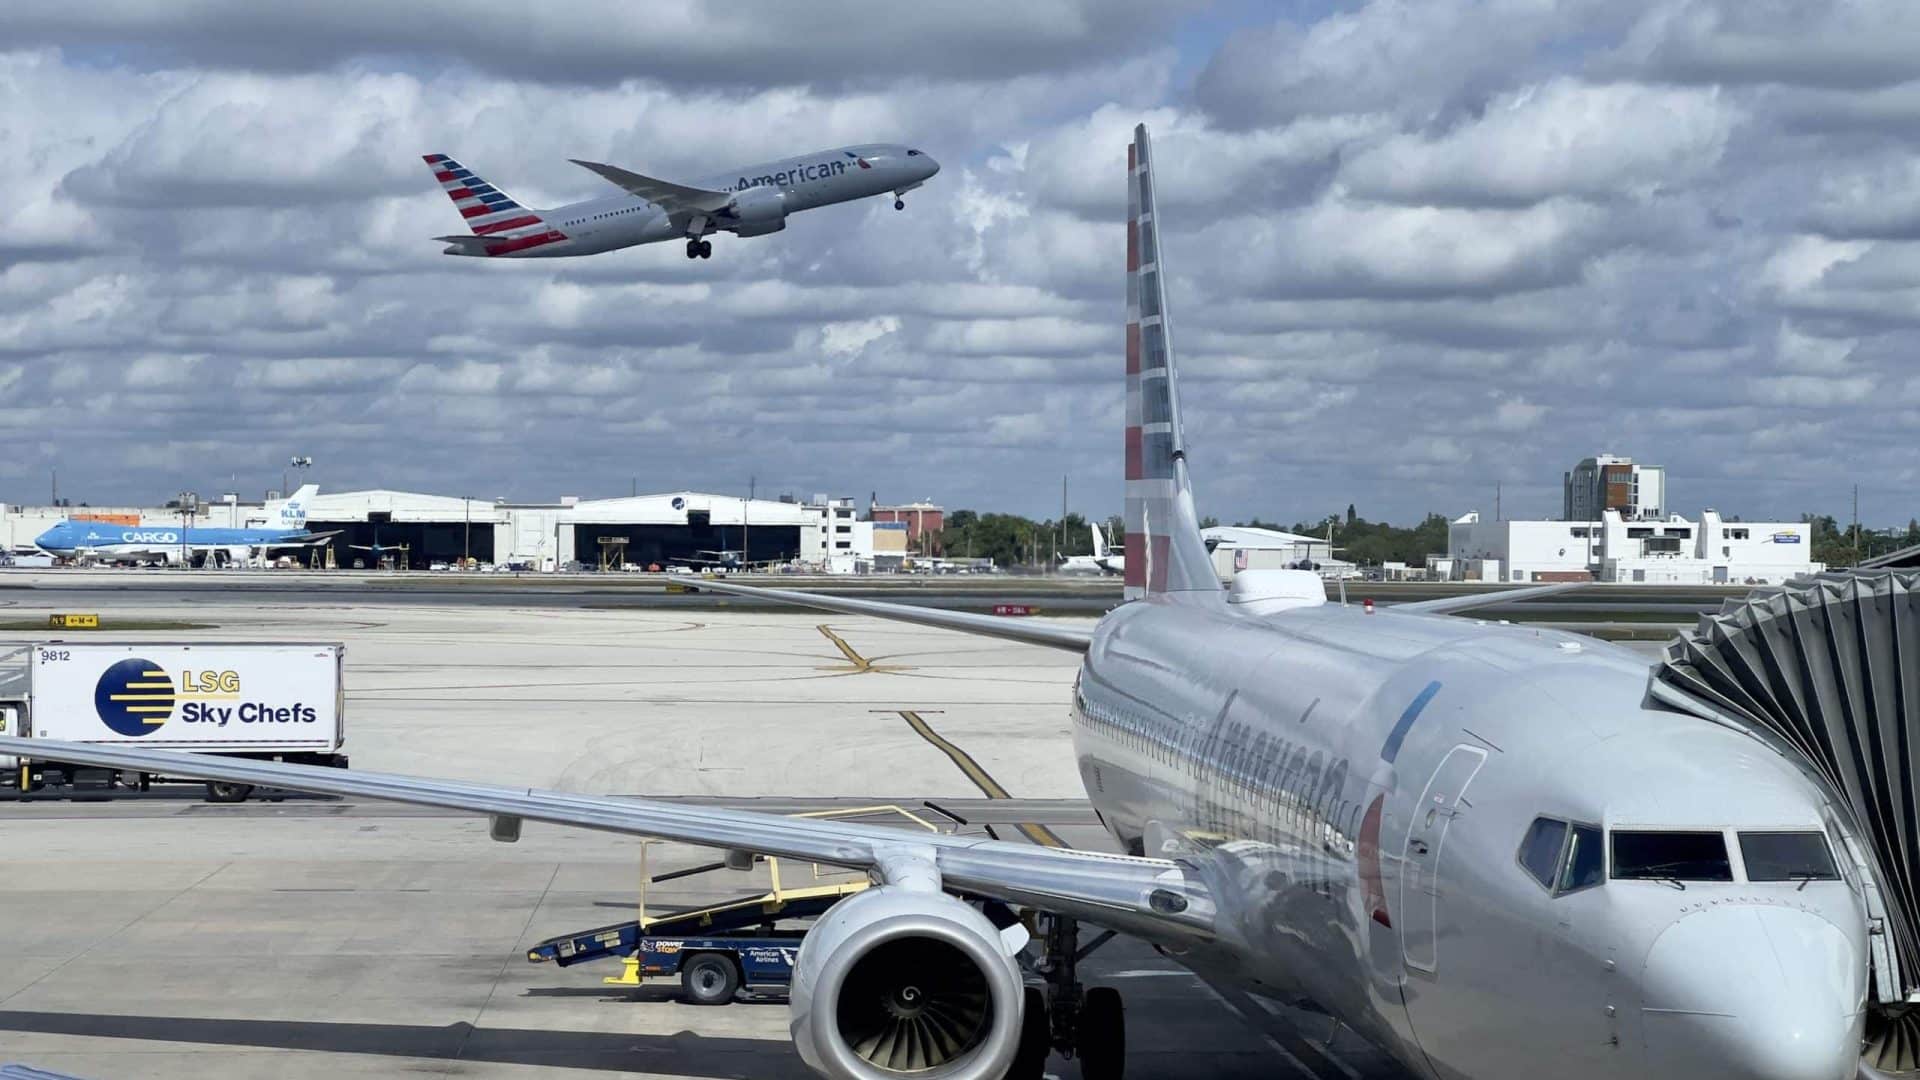 Una falla en el sistema provocó caos en vuelos en EUA